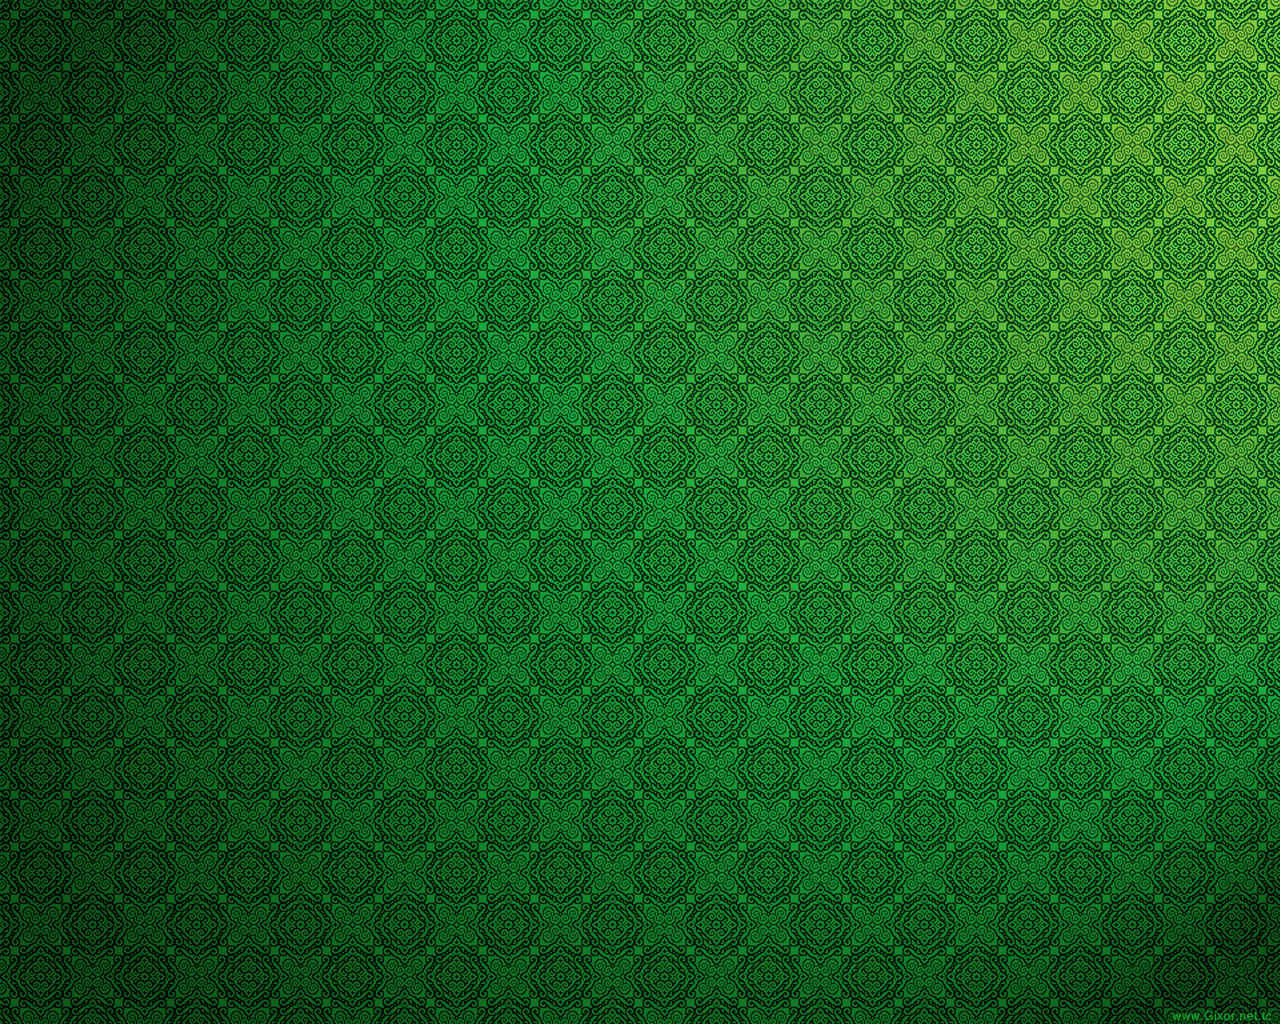 Green Nature Wallpaper Design Grass